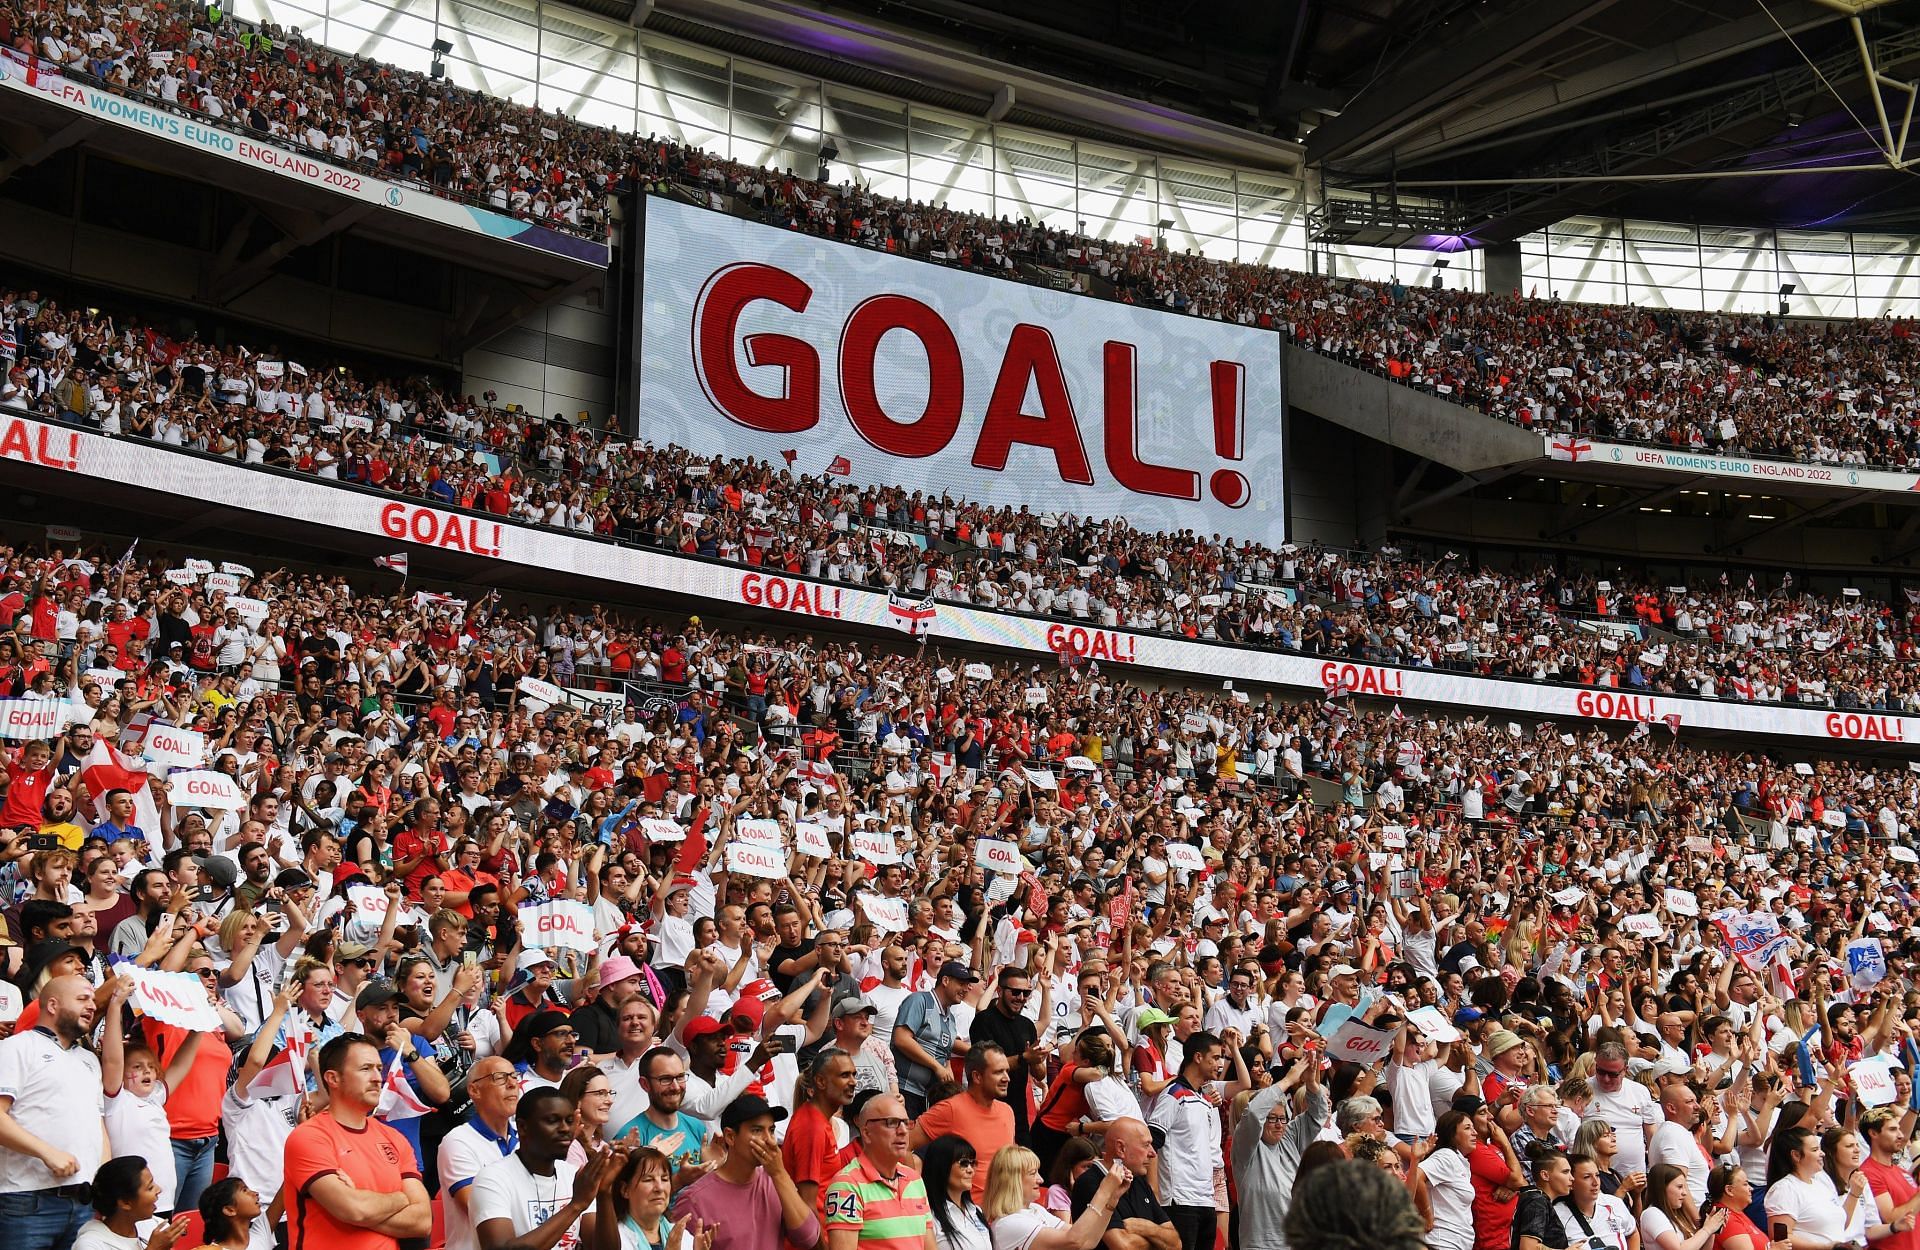 फाइनल देखने के लिए 87 हजार से ज्यादा दर्शक स्टेडियम में मौजूद थे जो एक नया रिकॉर्ड है